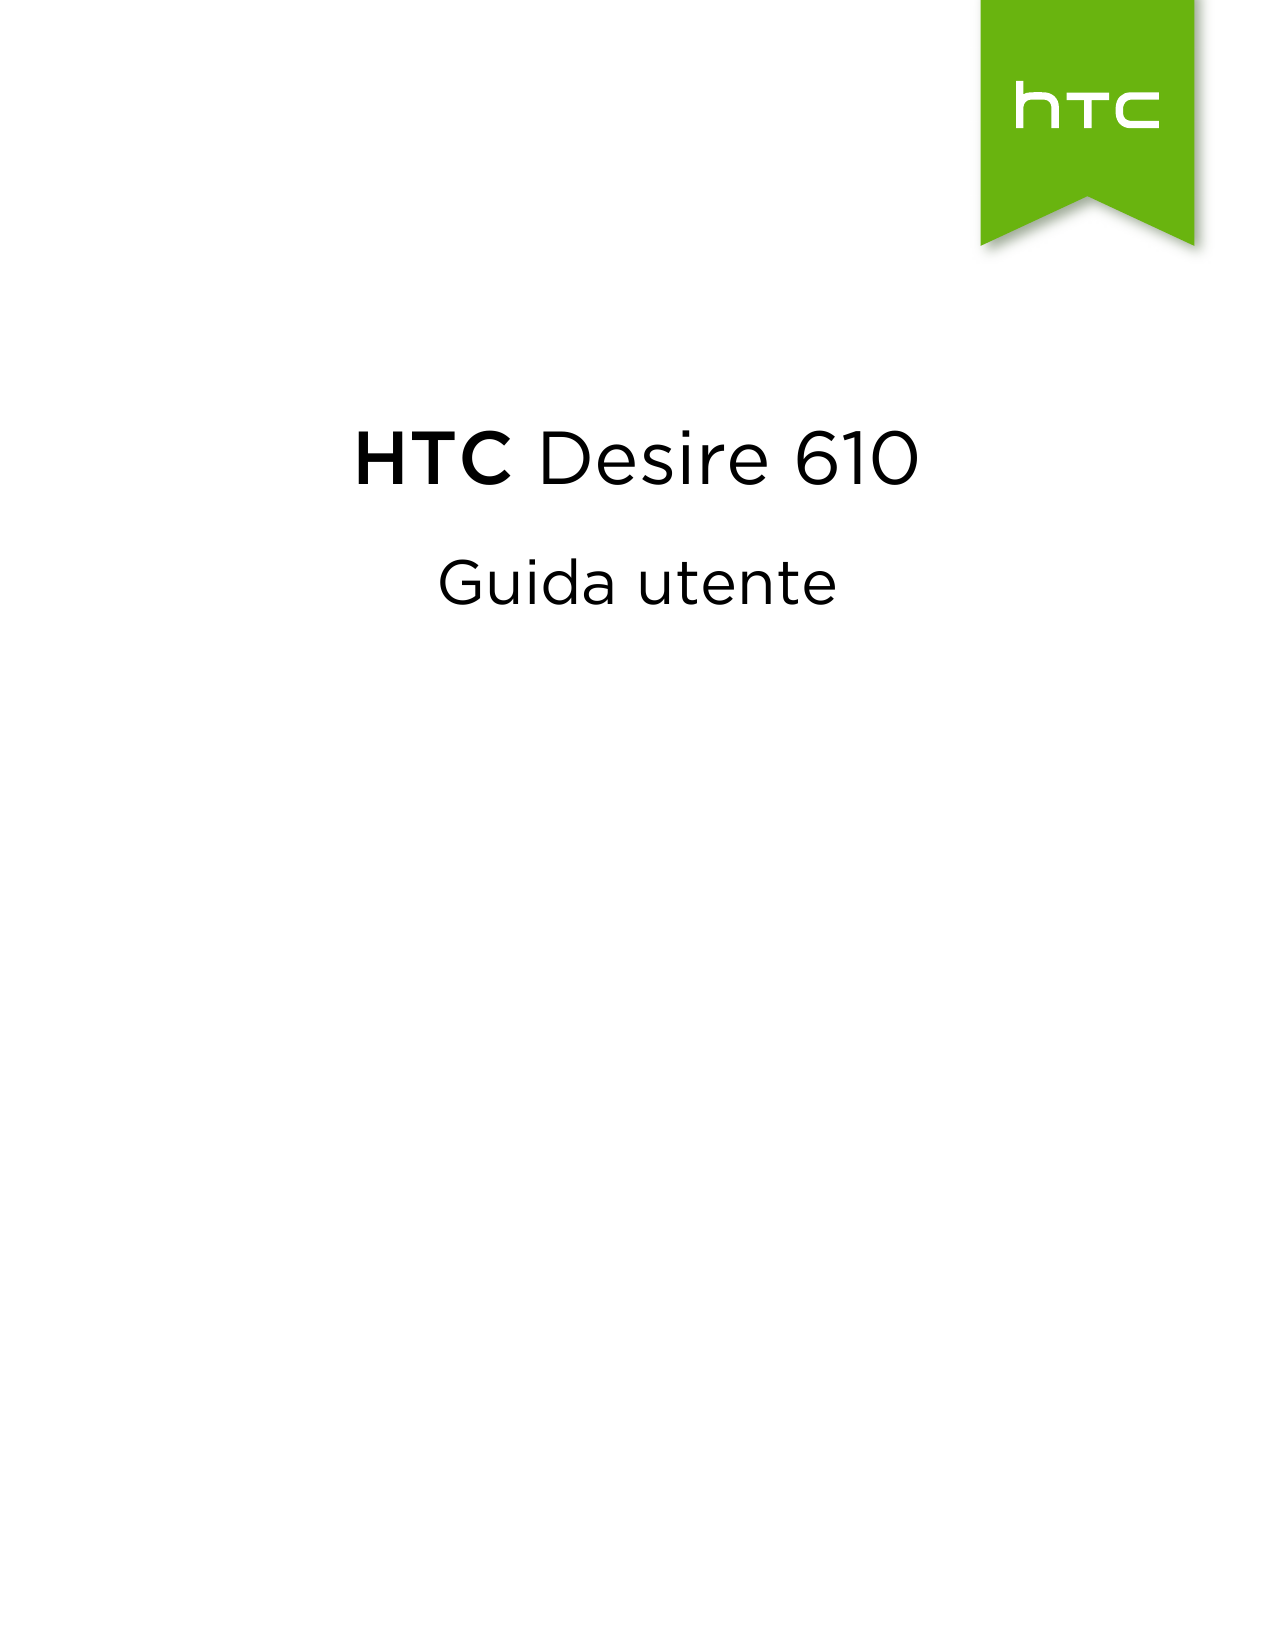 HTC Desire 610Guida utente